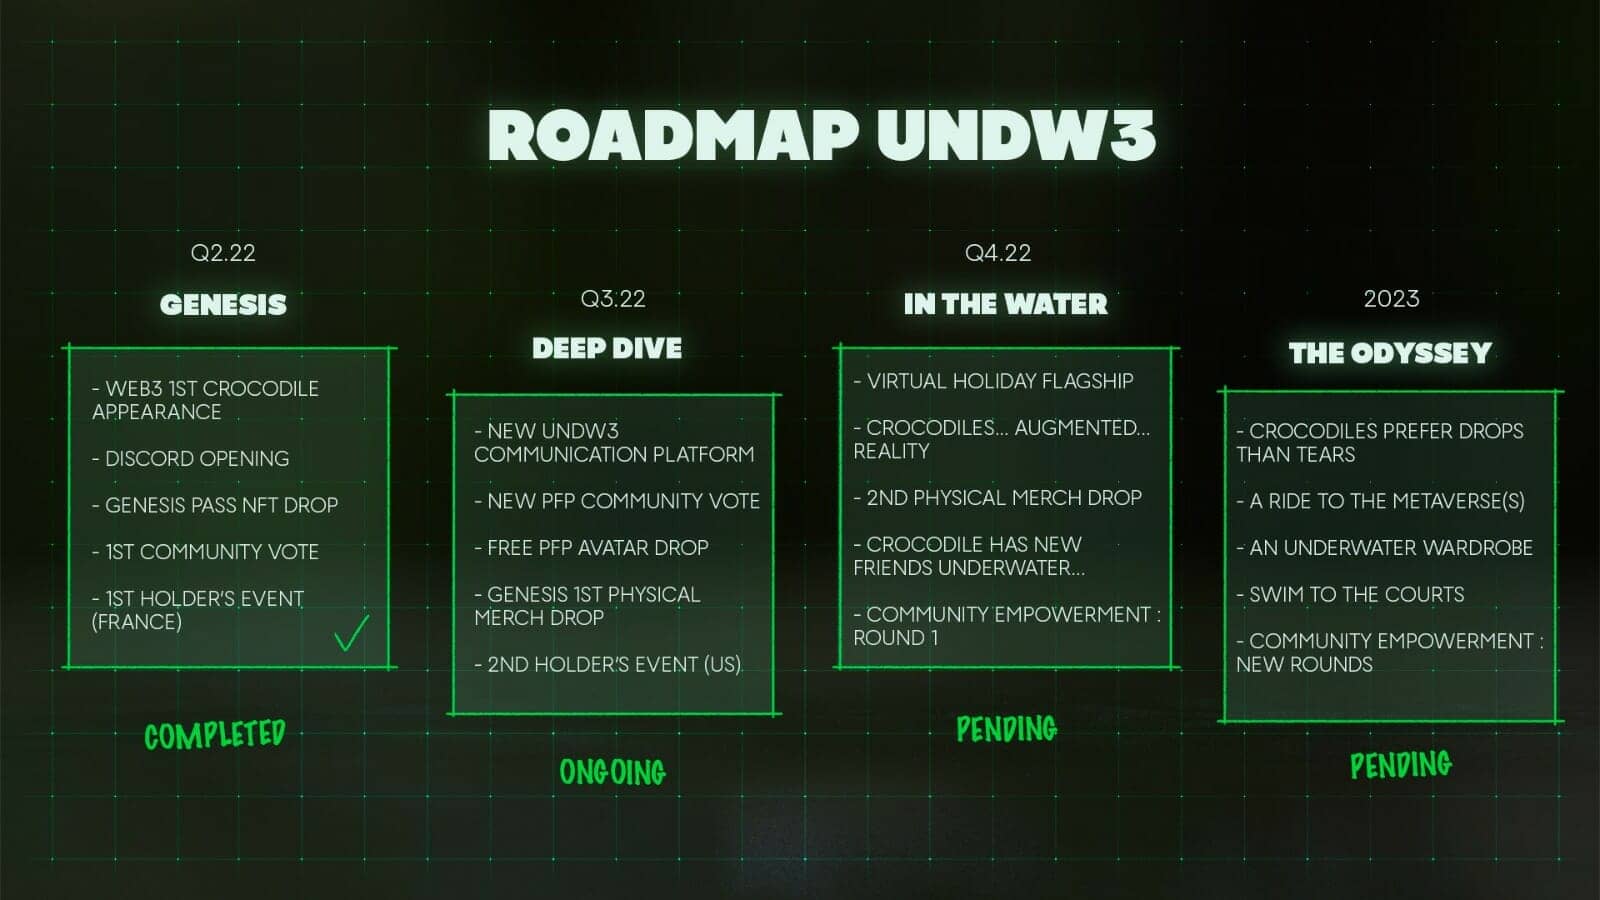 la roadmap undw3 recele un grand nombre d'informations concernant les prochaines évolutions du projet NFT initié par Lacoste